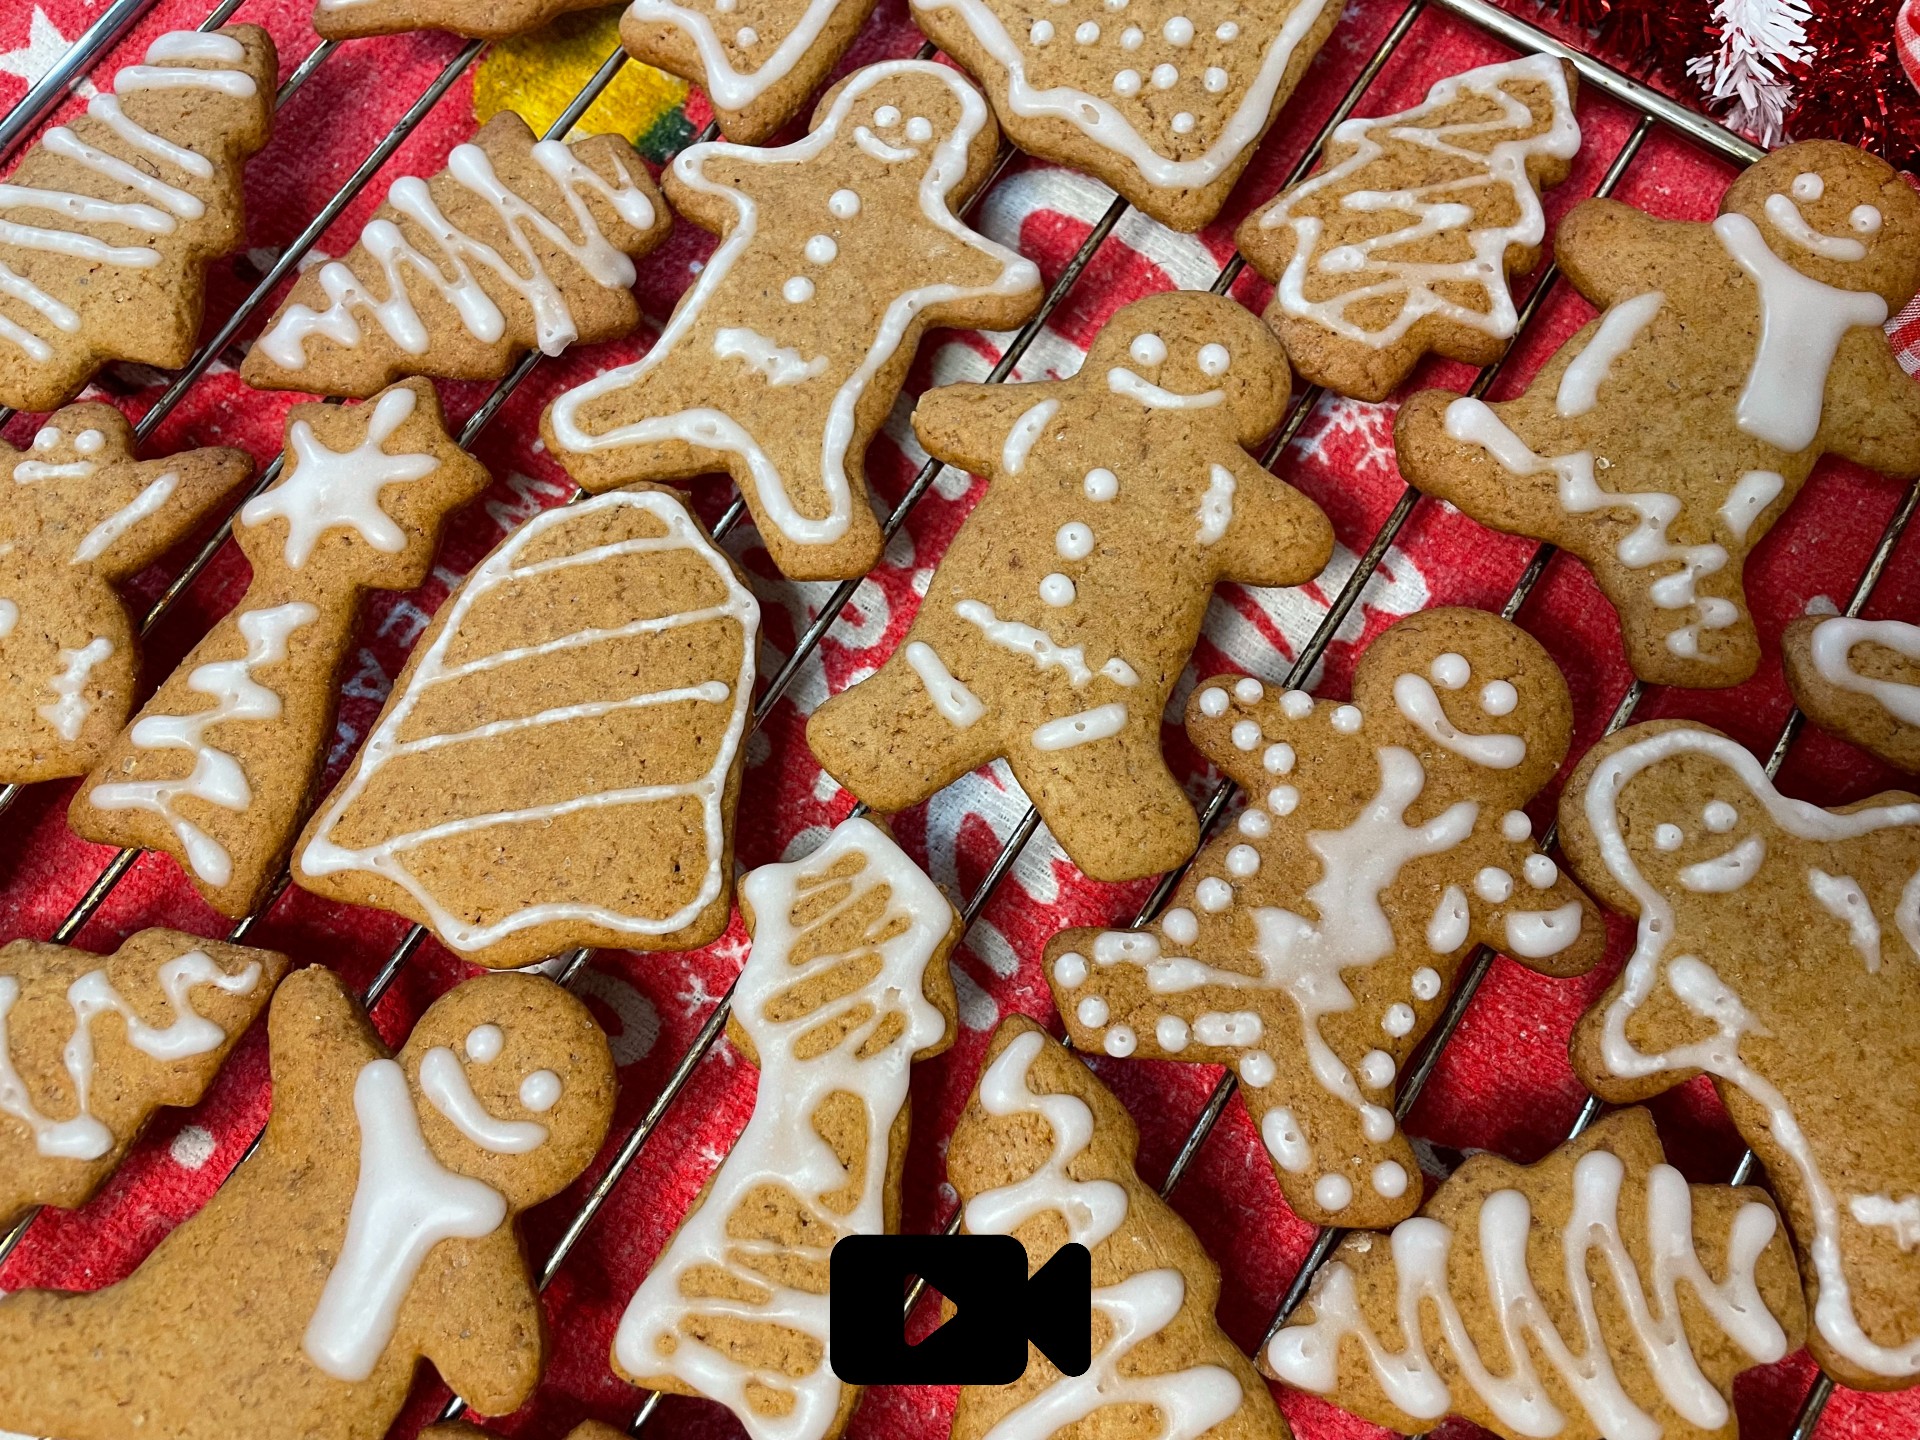 Συνταγή για μπισκότα gingerbread με τζίντζερ και κανέλα. Ένα κλασικό χριστουγεννιάτικο μπισκότο που θα το διακοσμήσετε μαζί με τα παιδιά σας. 